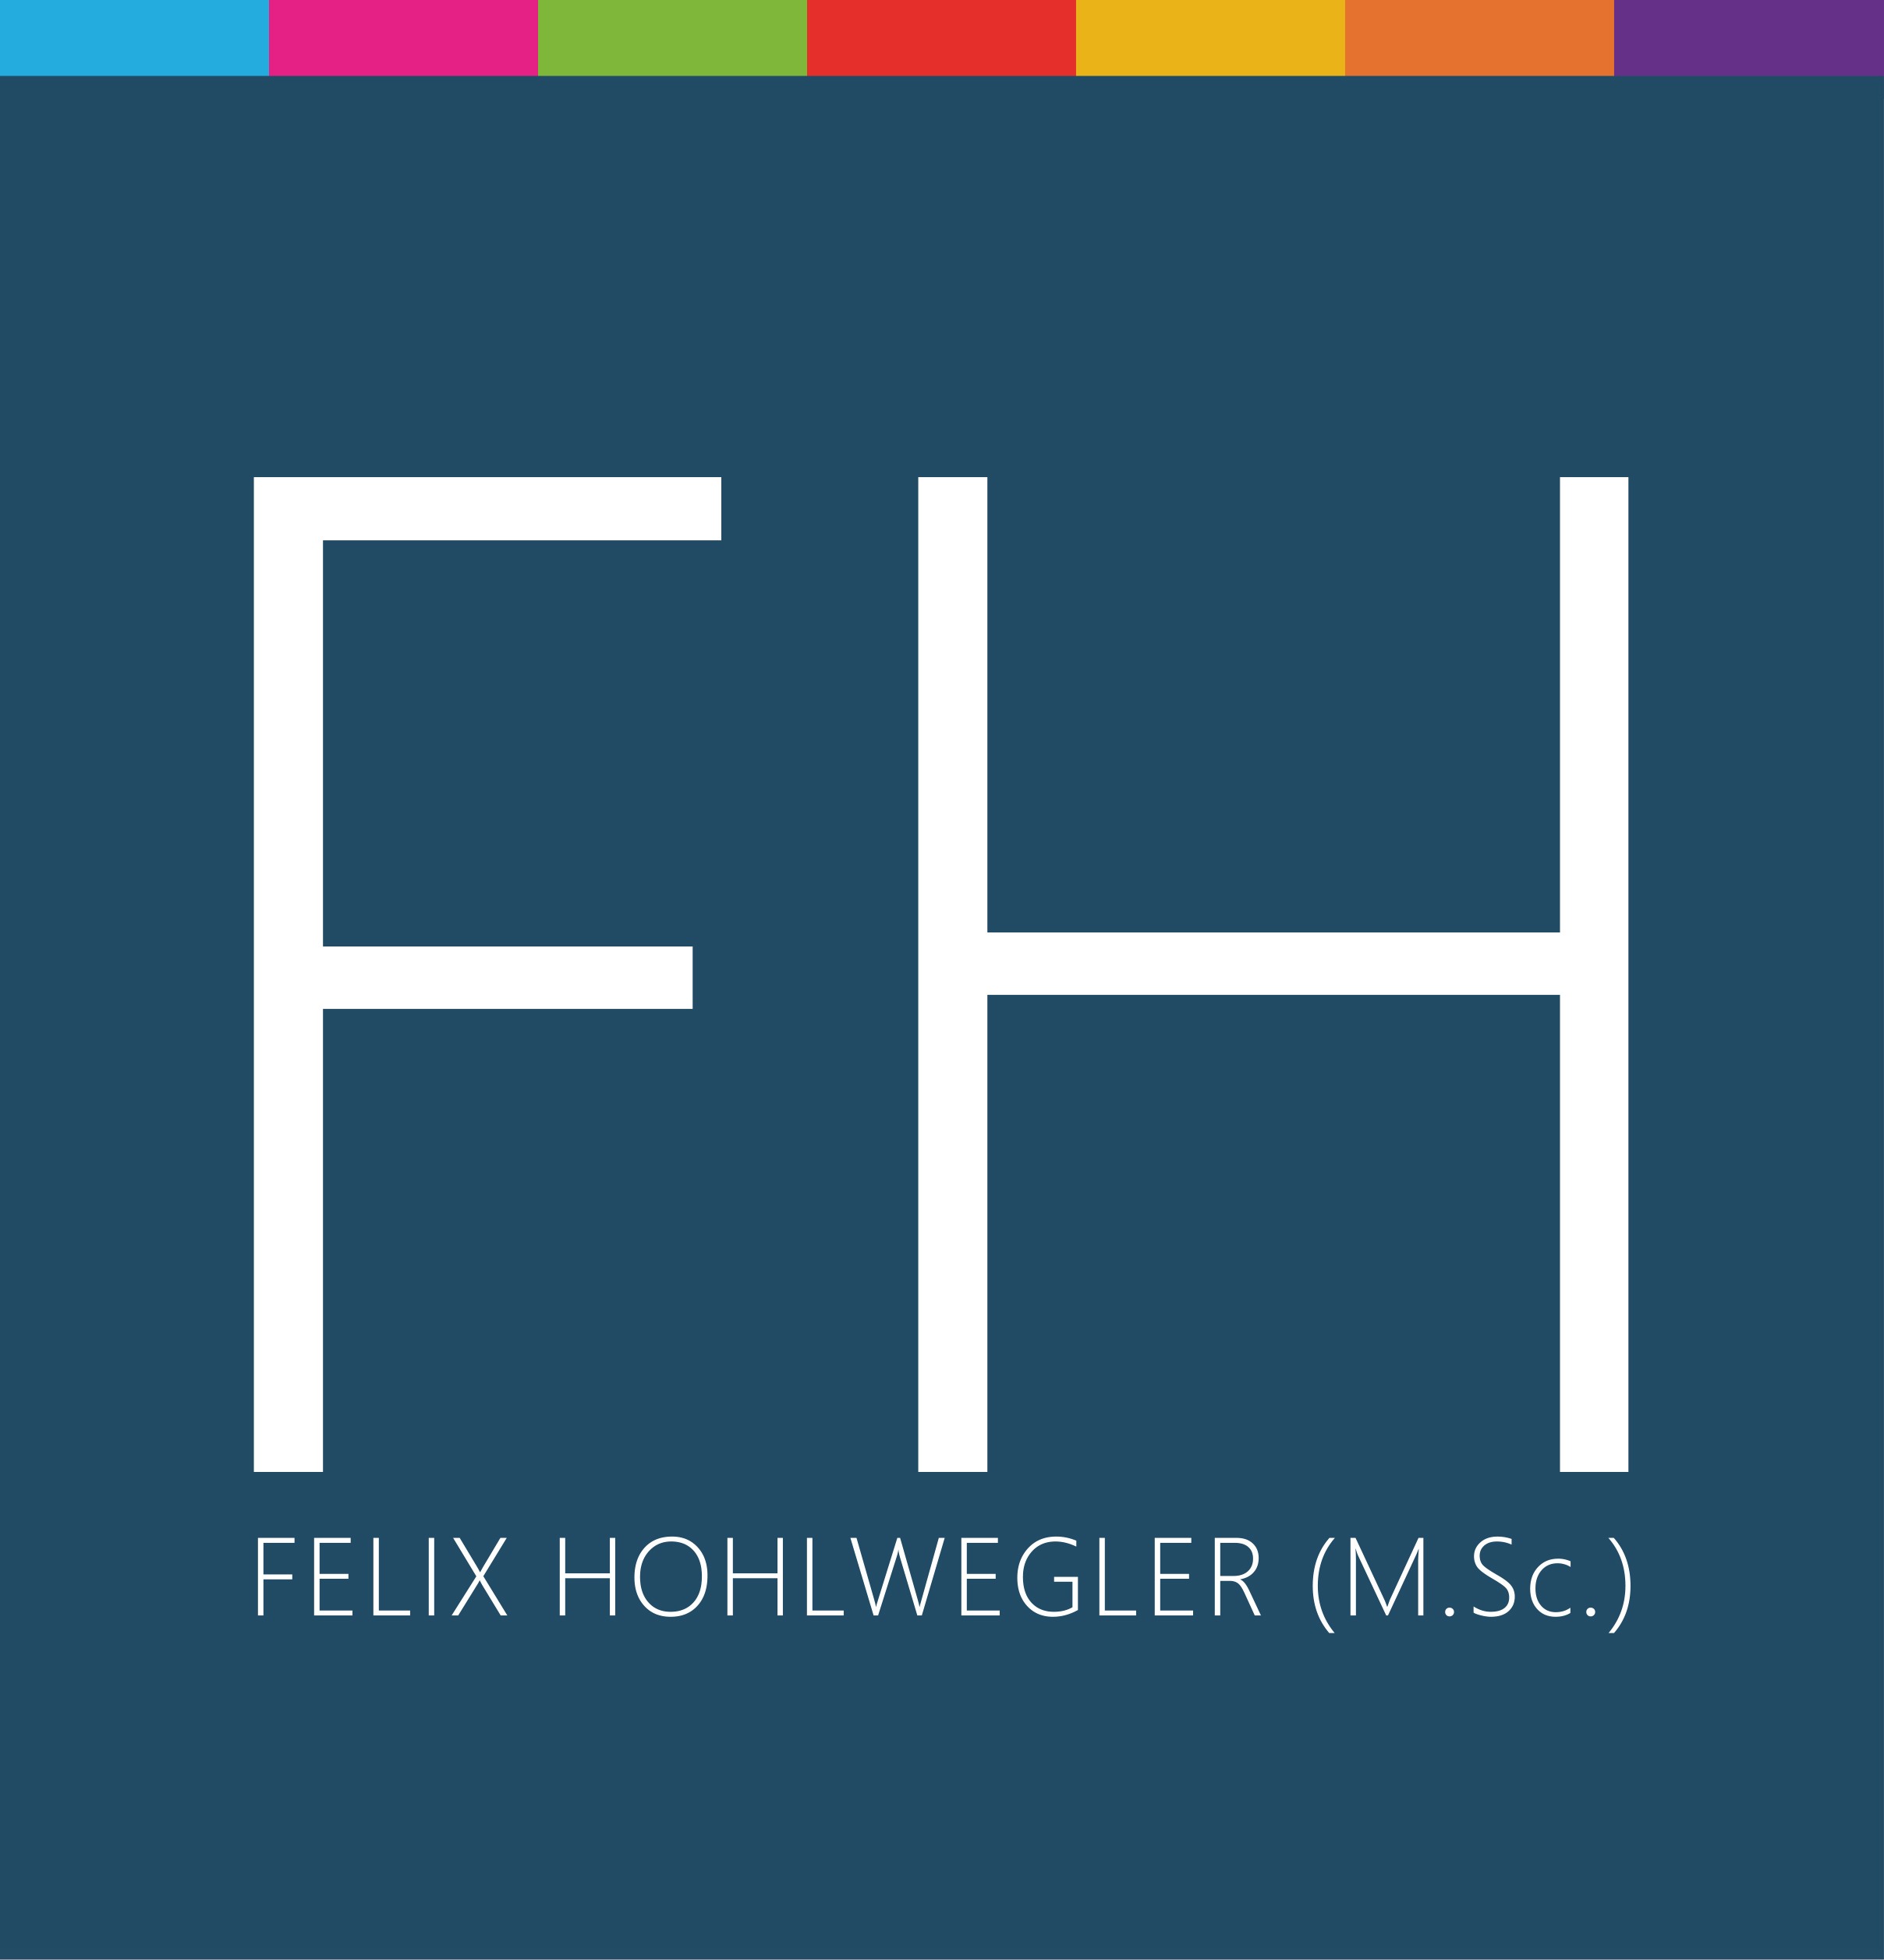 Felix Hohlwegler